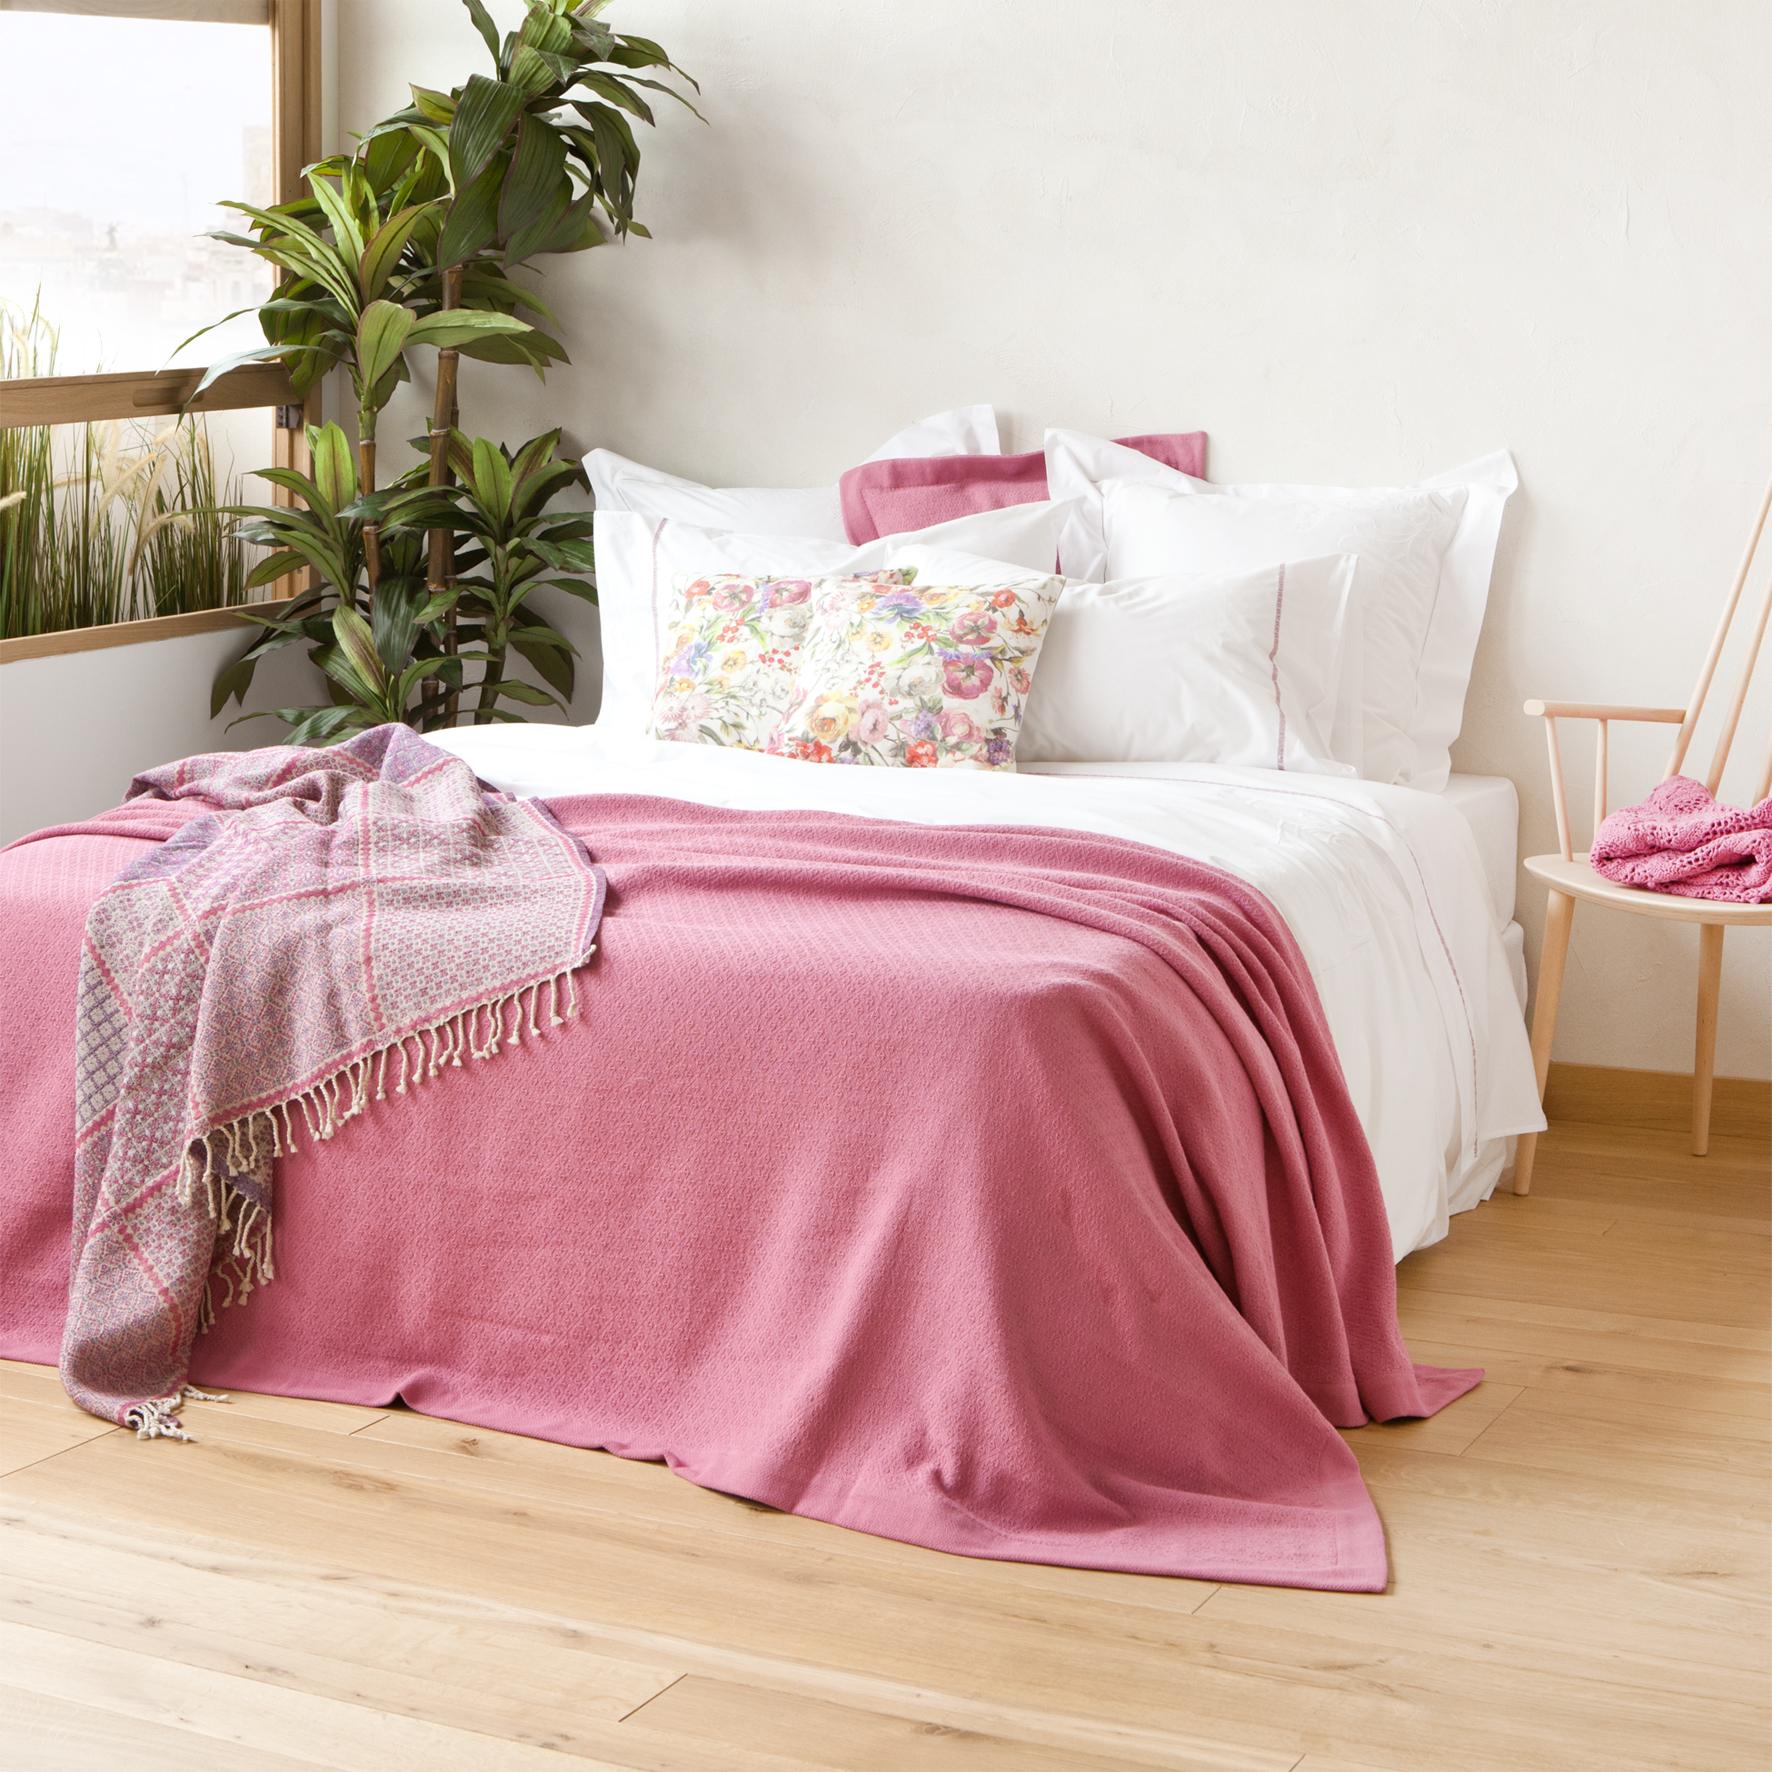 Bett mit rosafarbenen Tagesdecken #bett #holzstuhl #zarahome #zimmerpflanze ©Zara Home